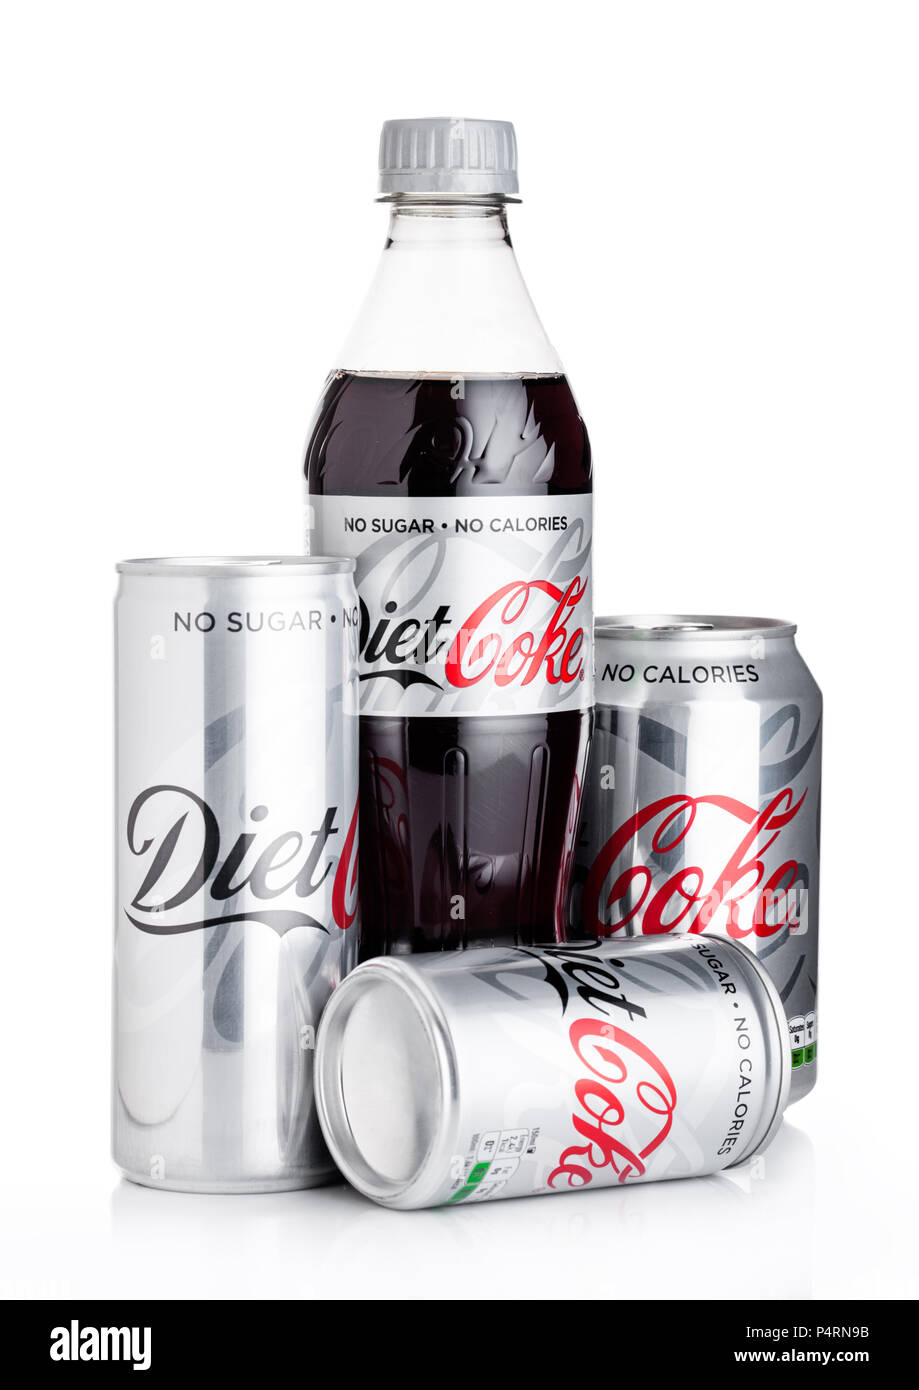 LONDON, UK - Juni 02, 2018: Flasche Diät Coca-Cola auf weißem Hintergrund. Coca-Cola ist einer der beliebtesten Soda Produkte in der Welt. Stockfoto